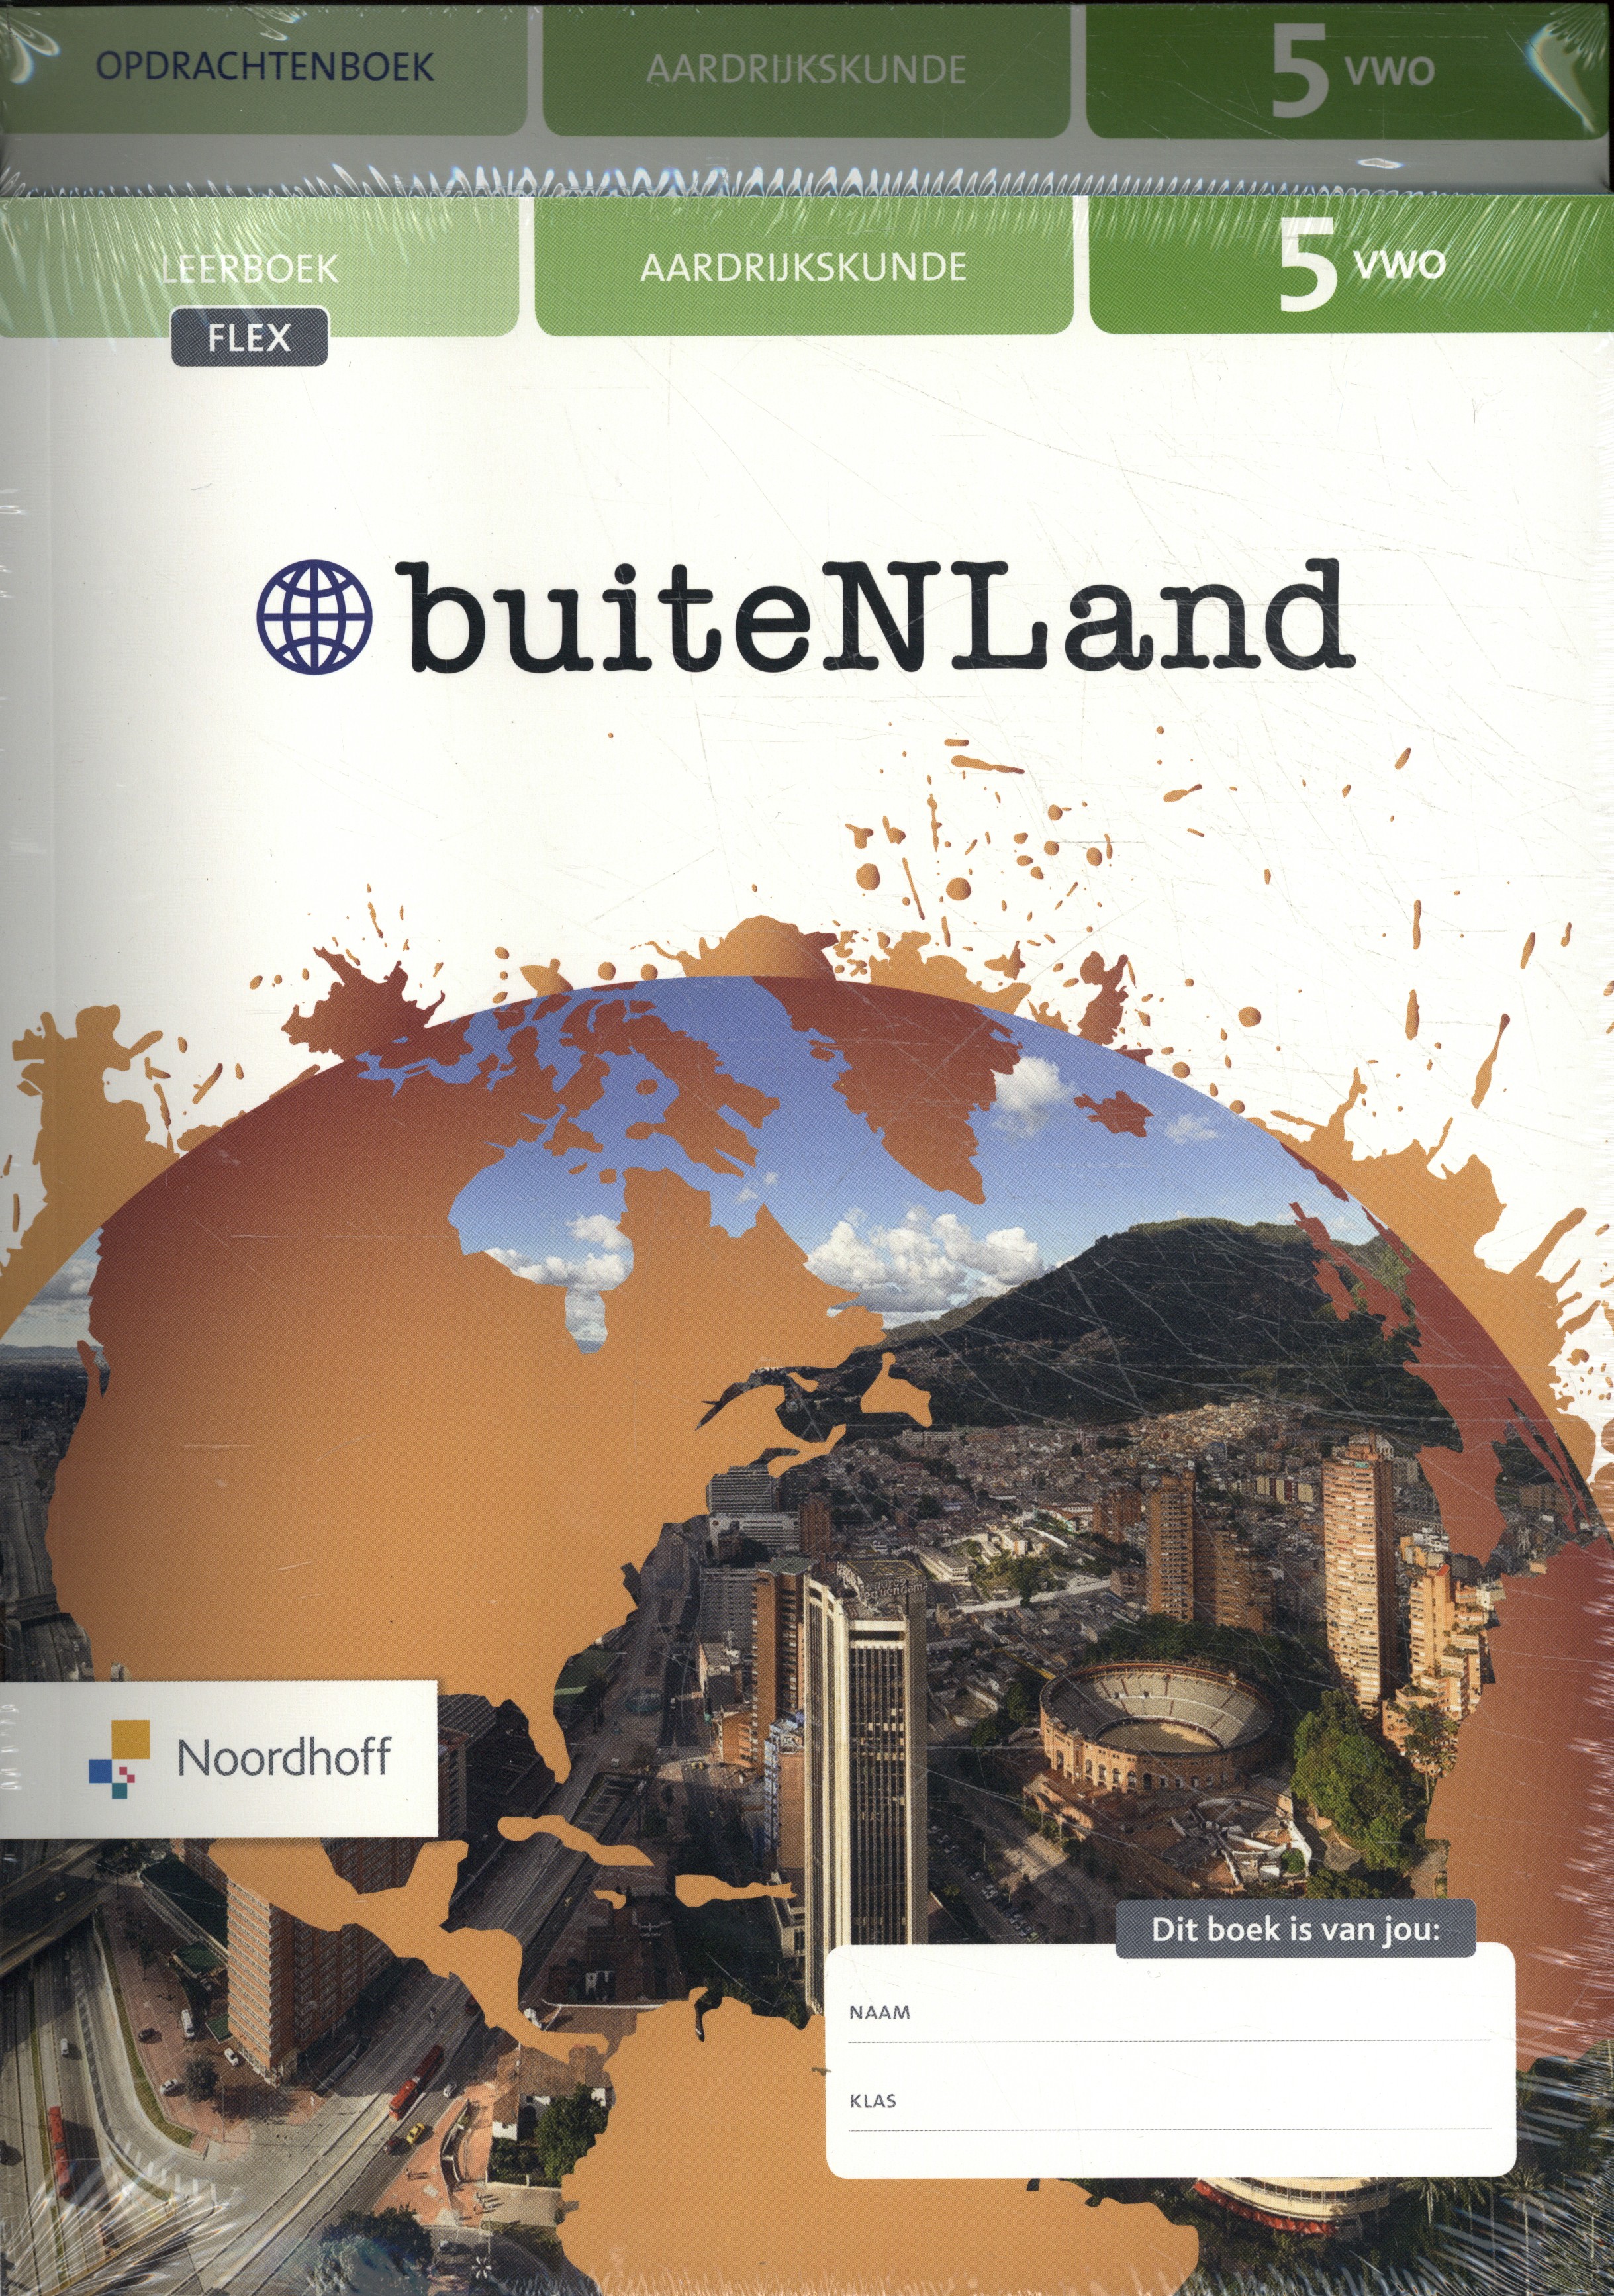 buiteNLand 5 vwo aardrijkskunde flex leer- en opdrachtenboek